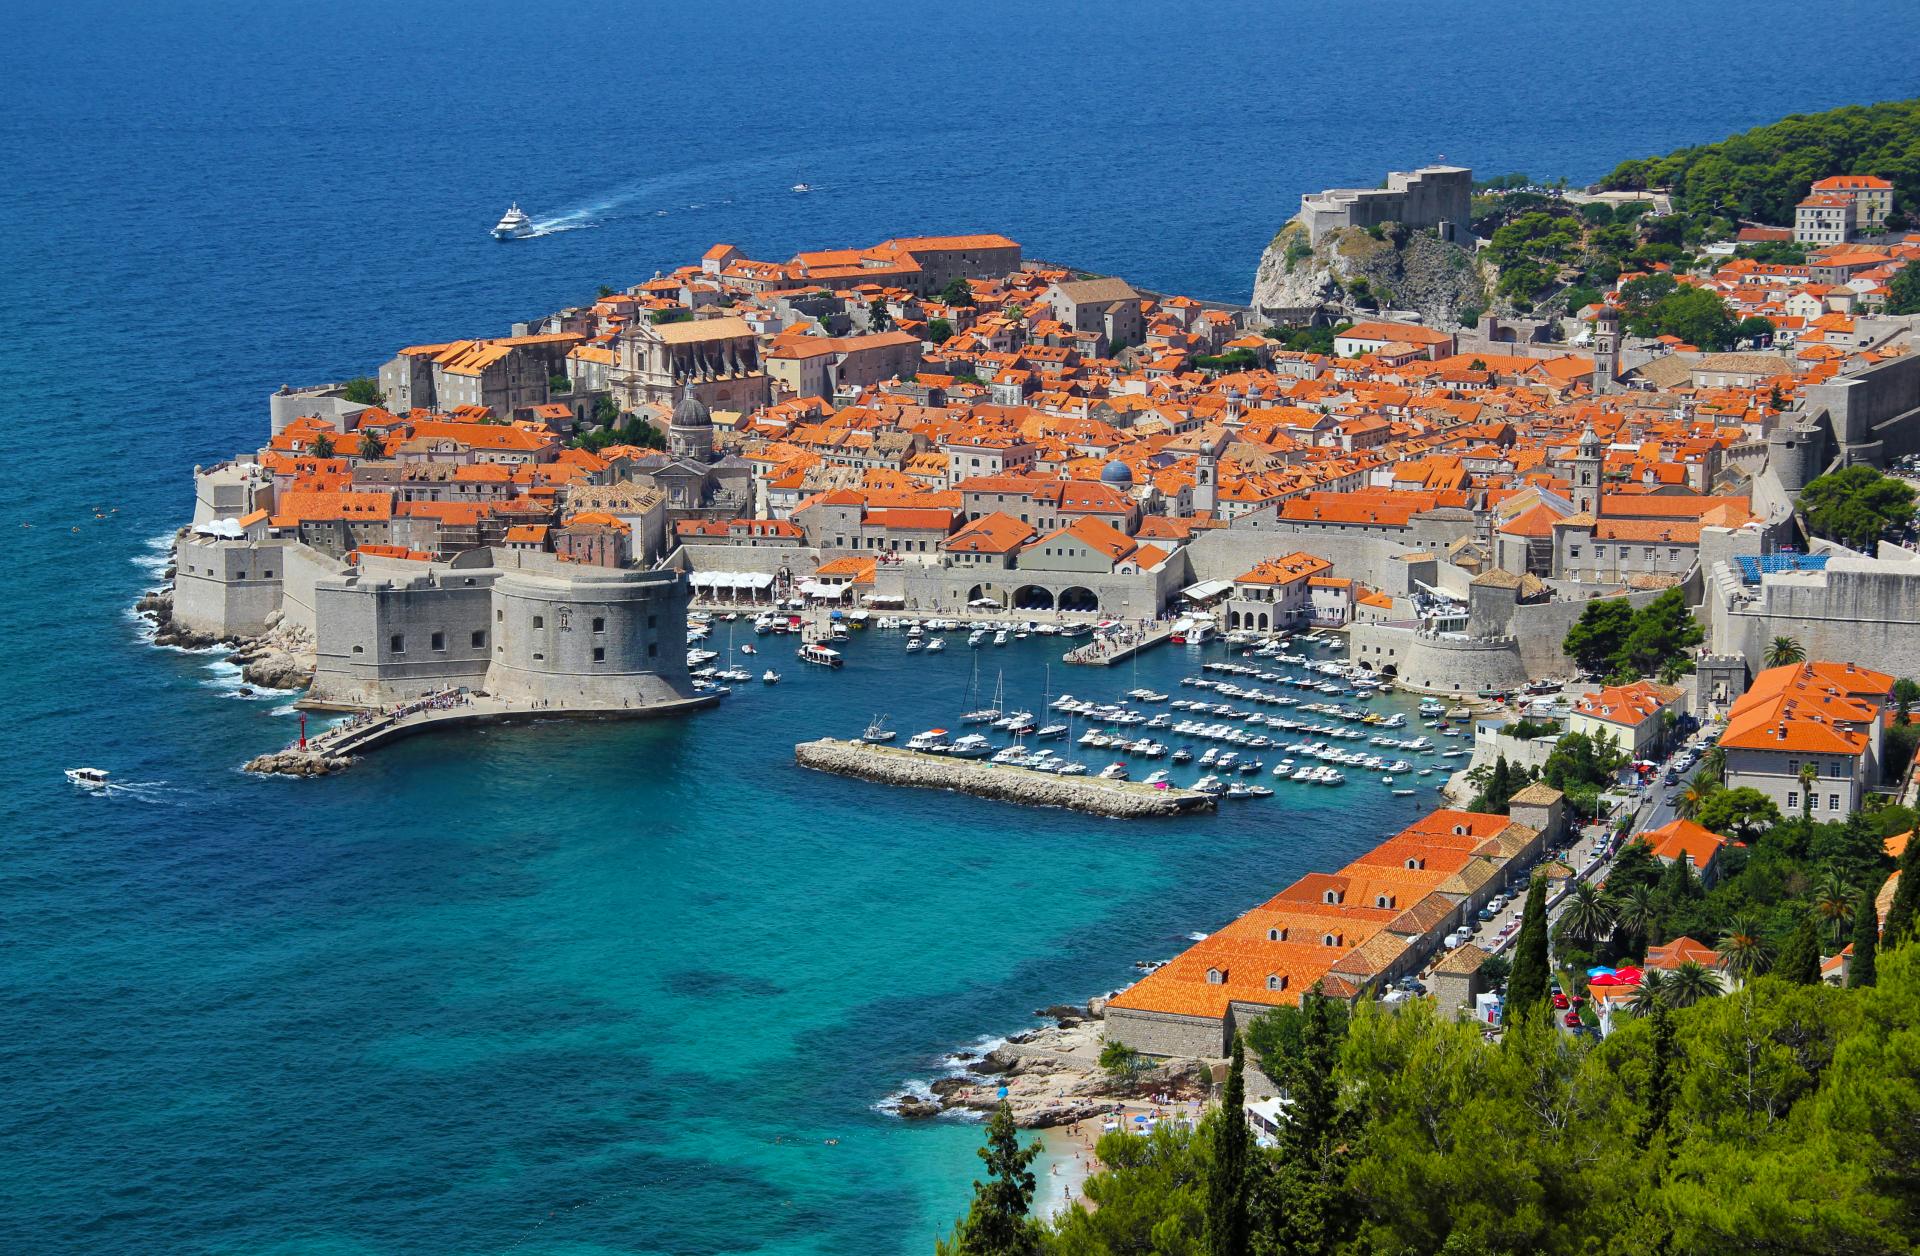 Turizmus by mal zaistiť rast chorvátskej ekonomiky, očakávajú rekordné výsledky